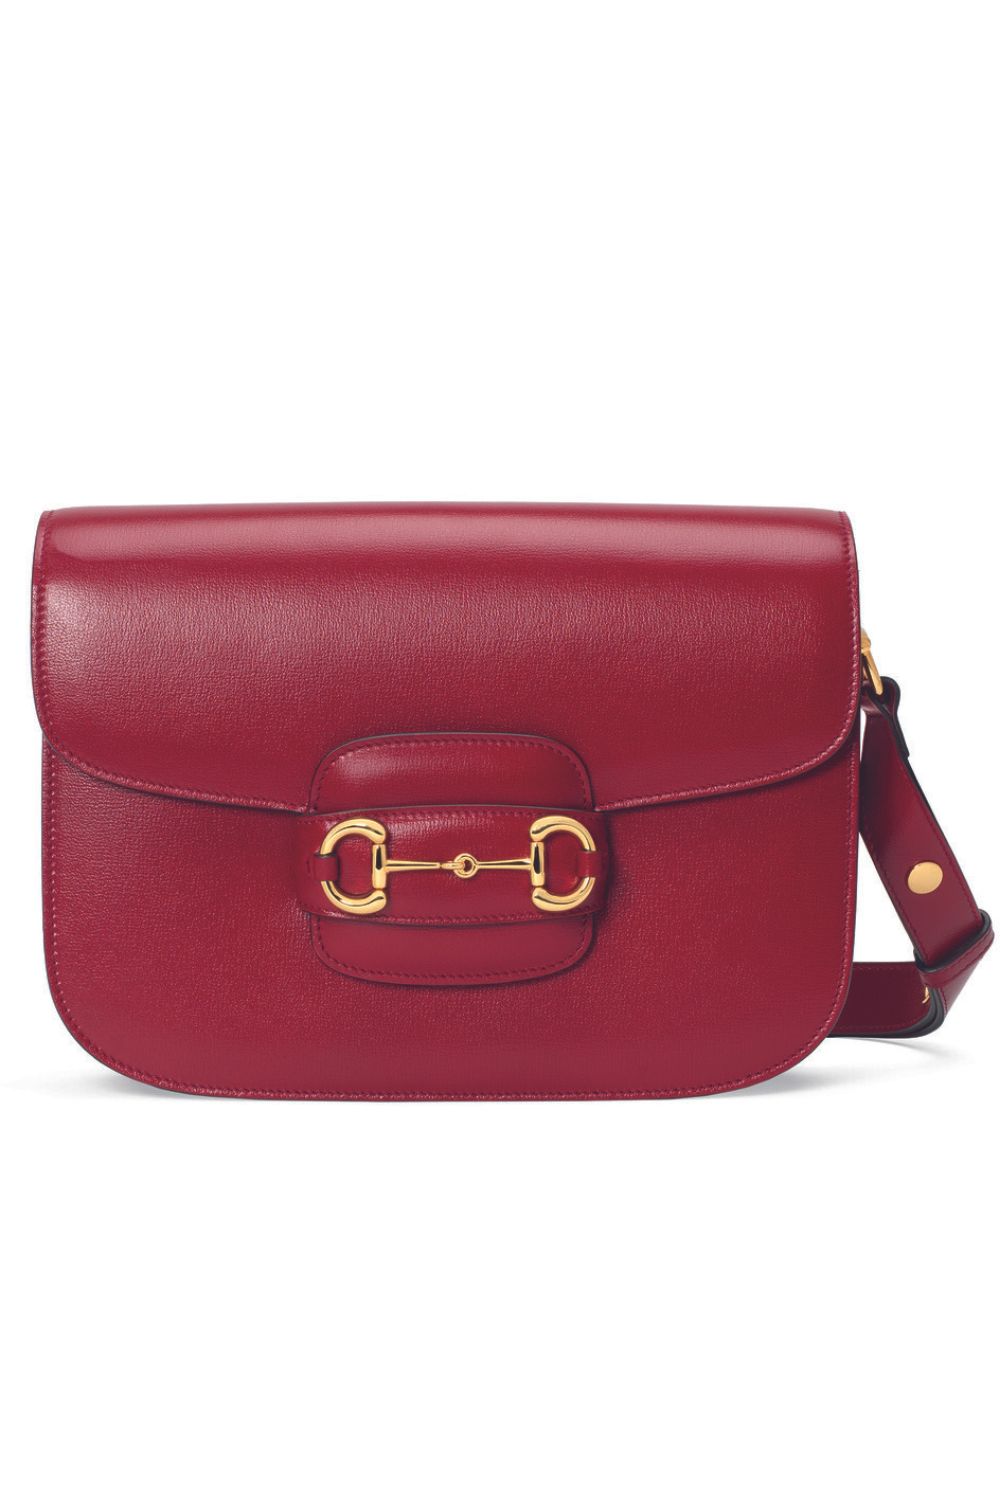 Gucci Horsebit 1955 shoulder bag in red leather